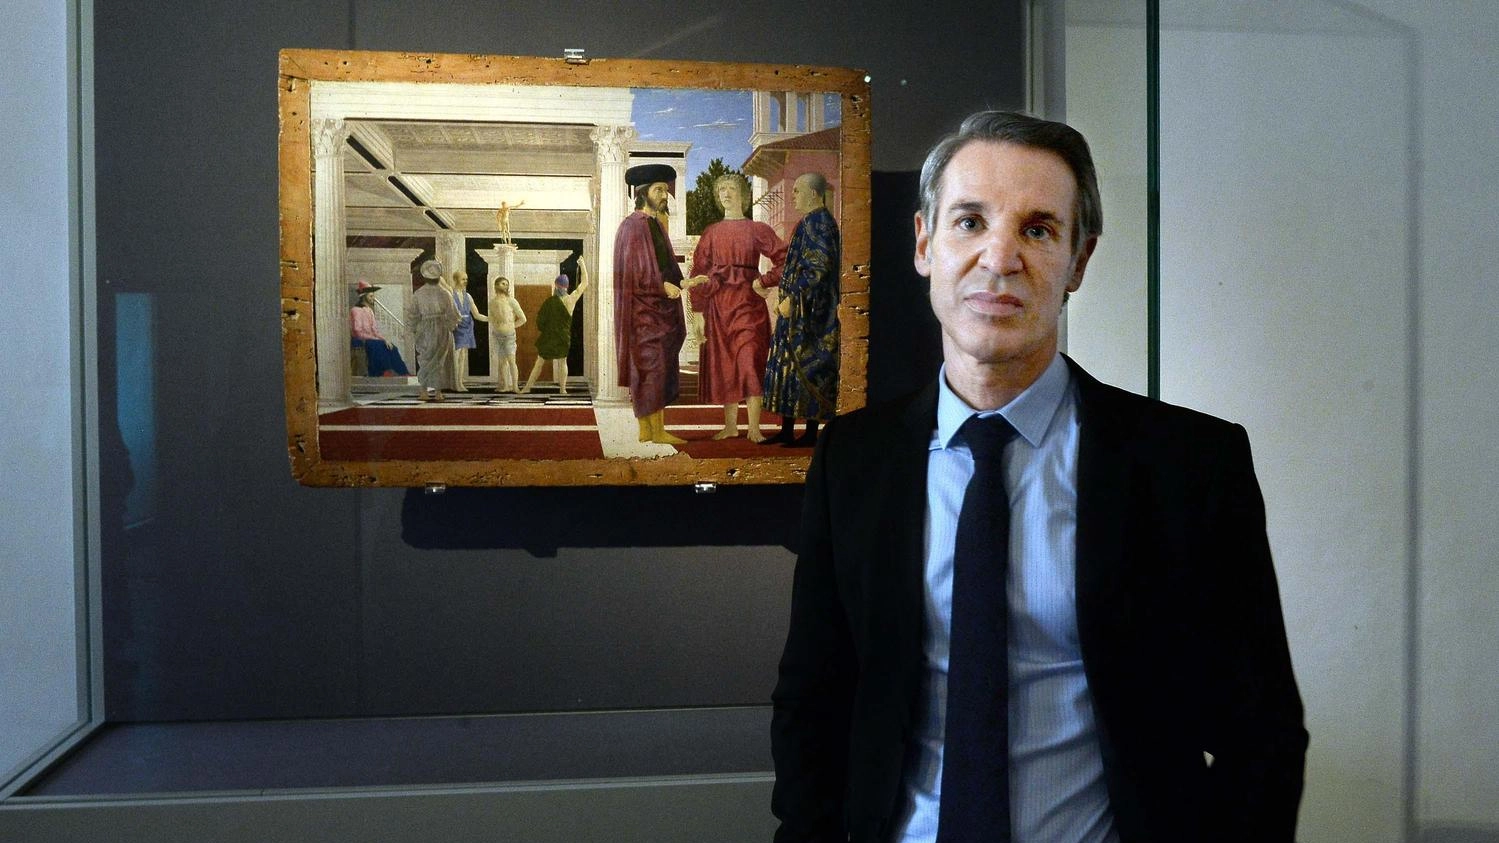 La grande mostra: "L’erede di Raffaello, ecco i capolavori di Federico Barocci"